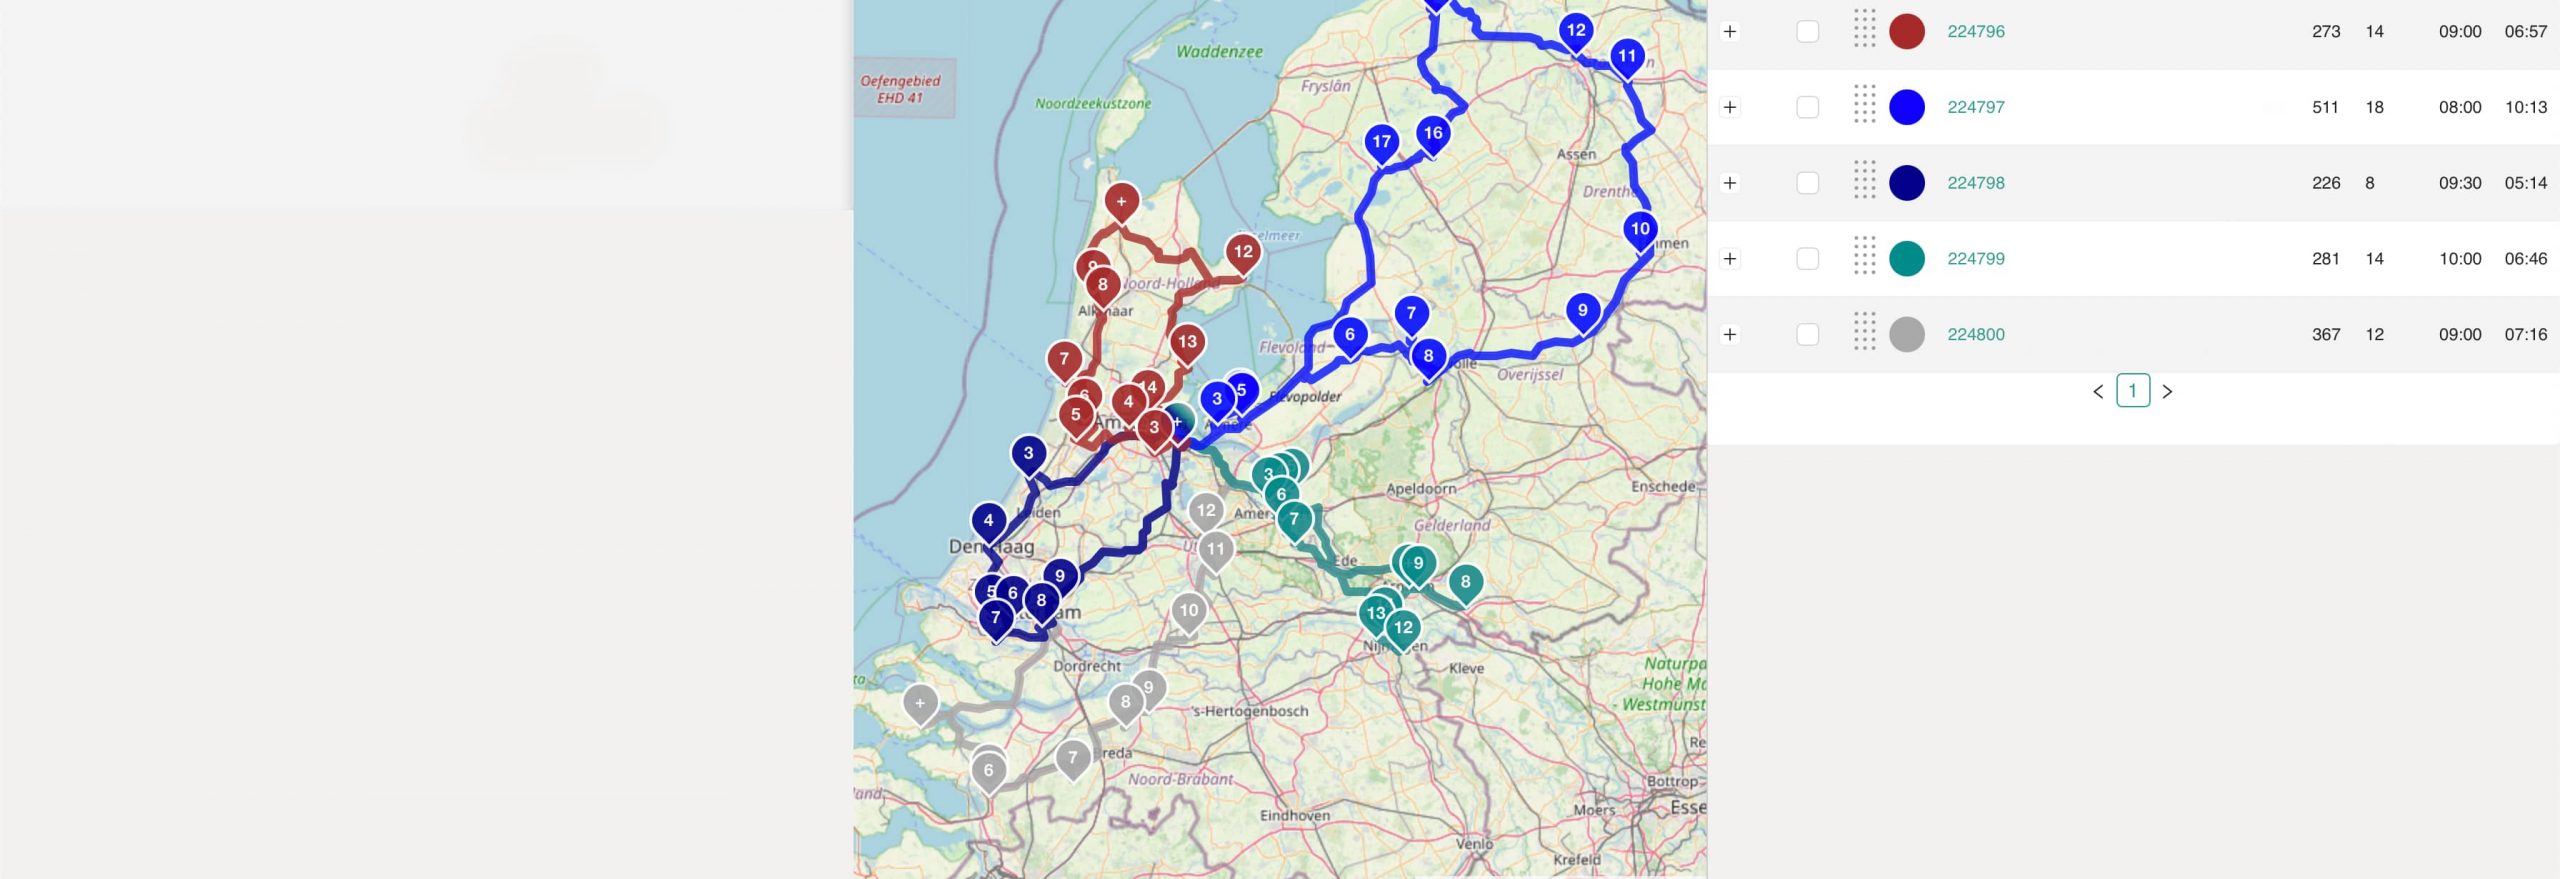 Landelijke dekking distributie Nederland